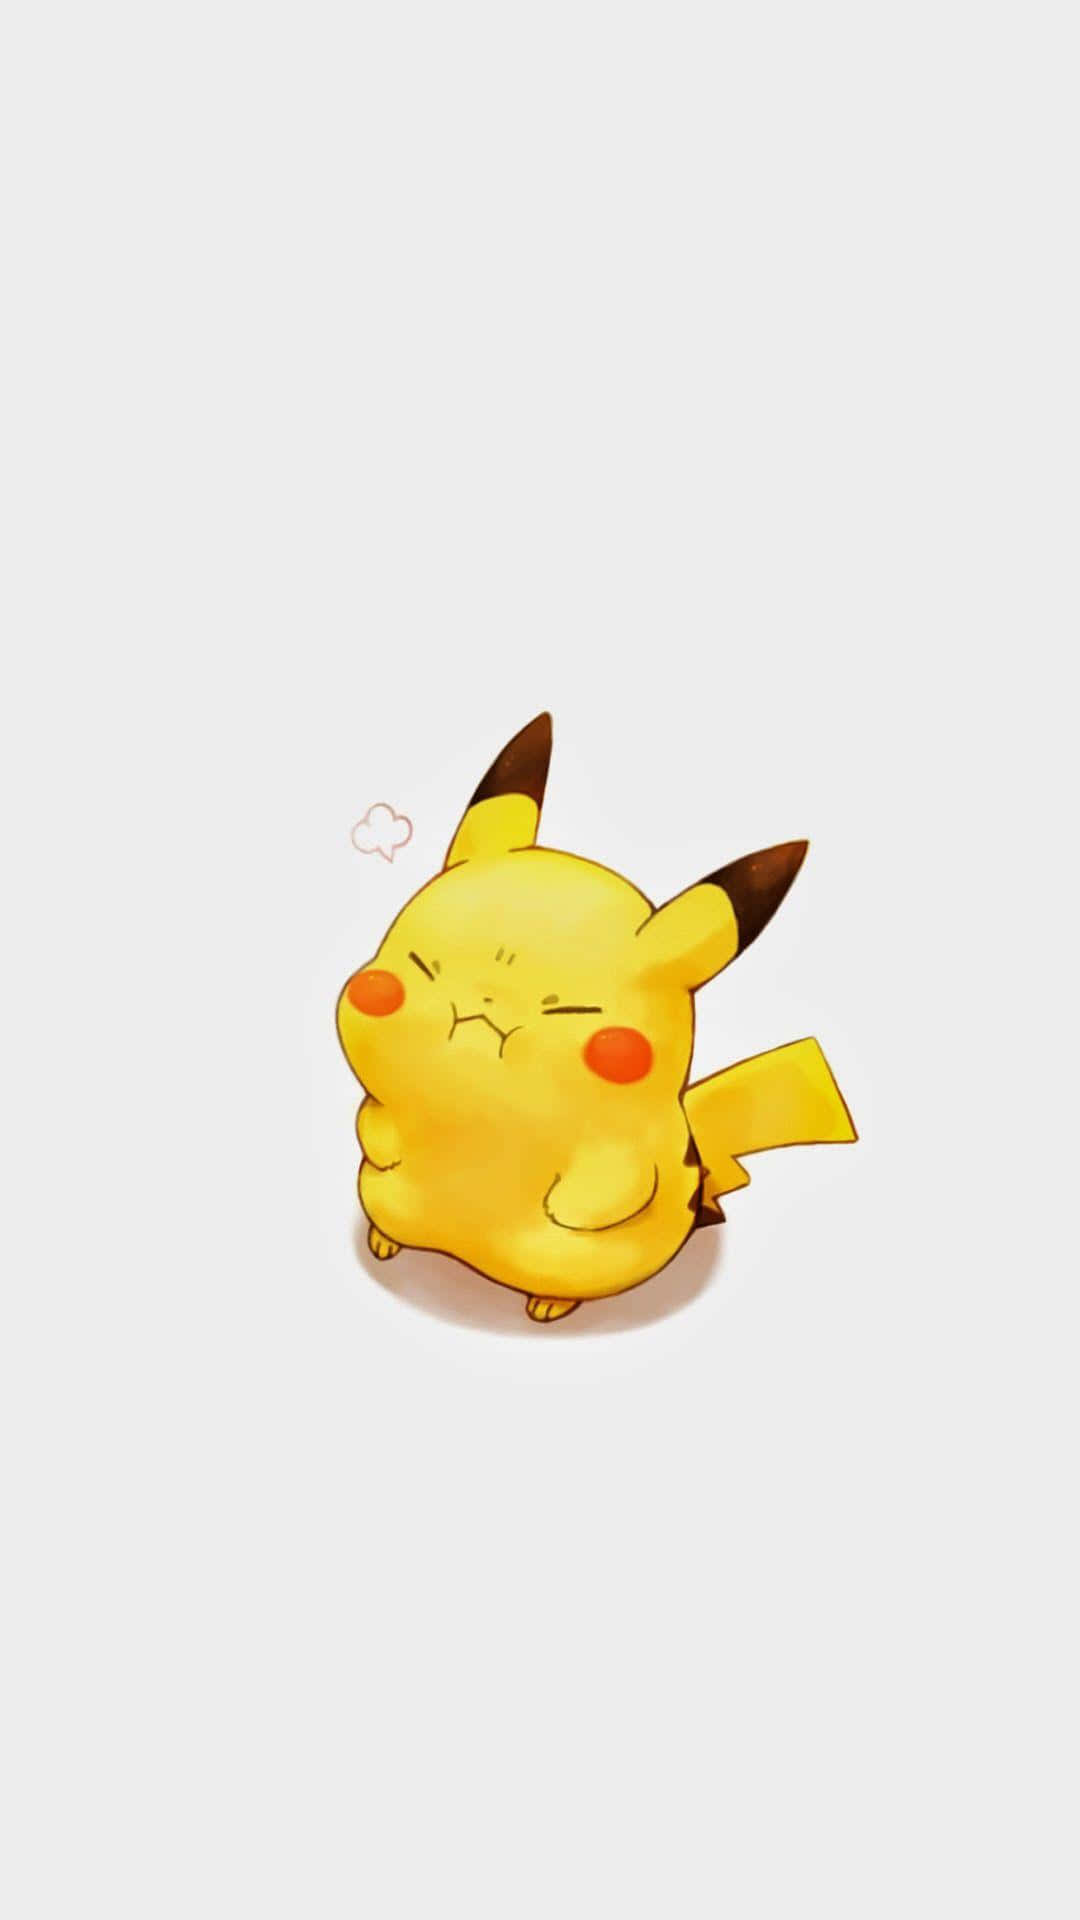 Süßeträume, Kleines Pikachu Wallpaper